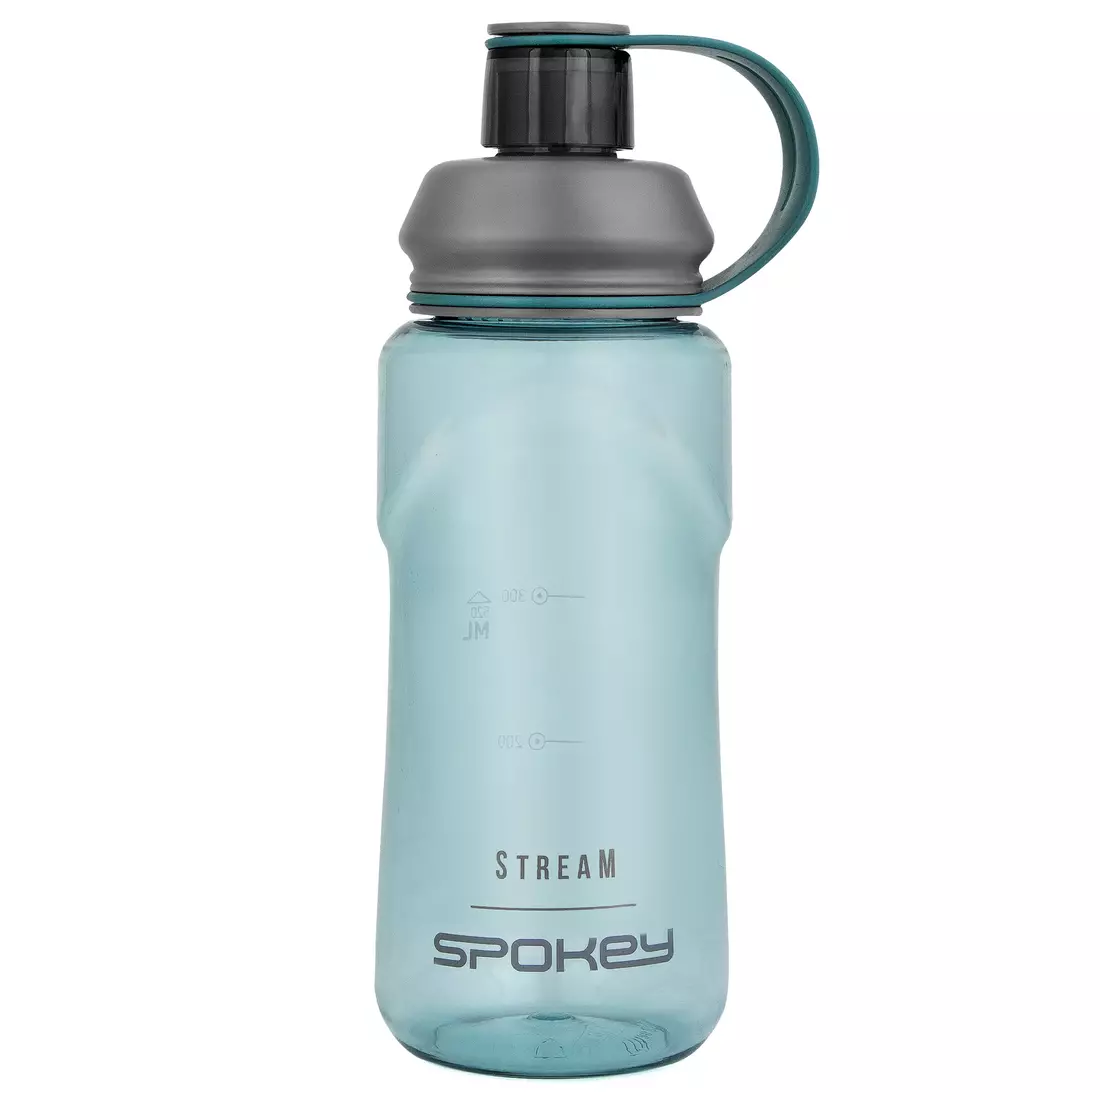 SPOKEY STREAM water bottle 0.5L turquoise